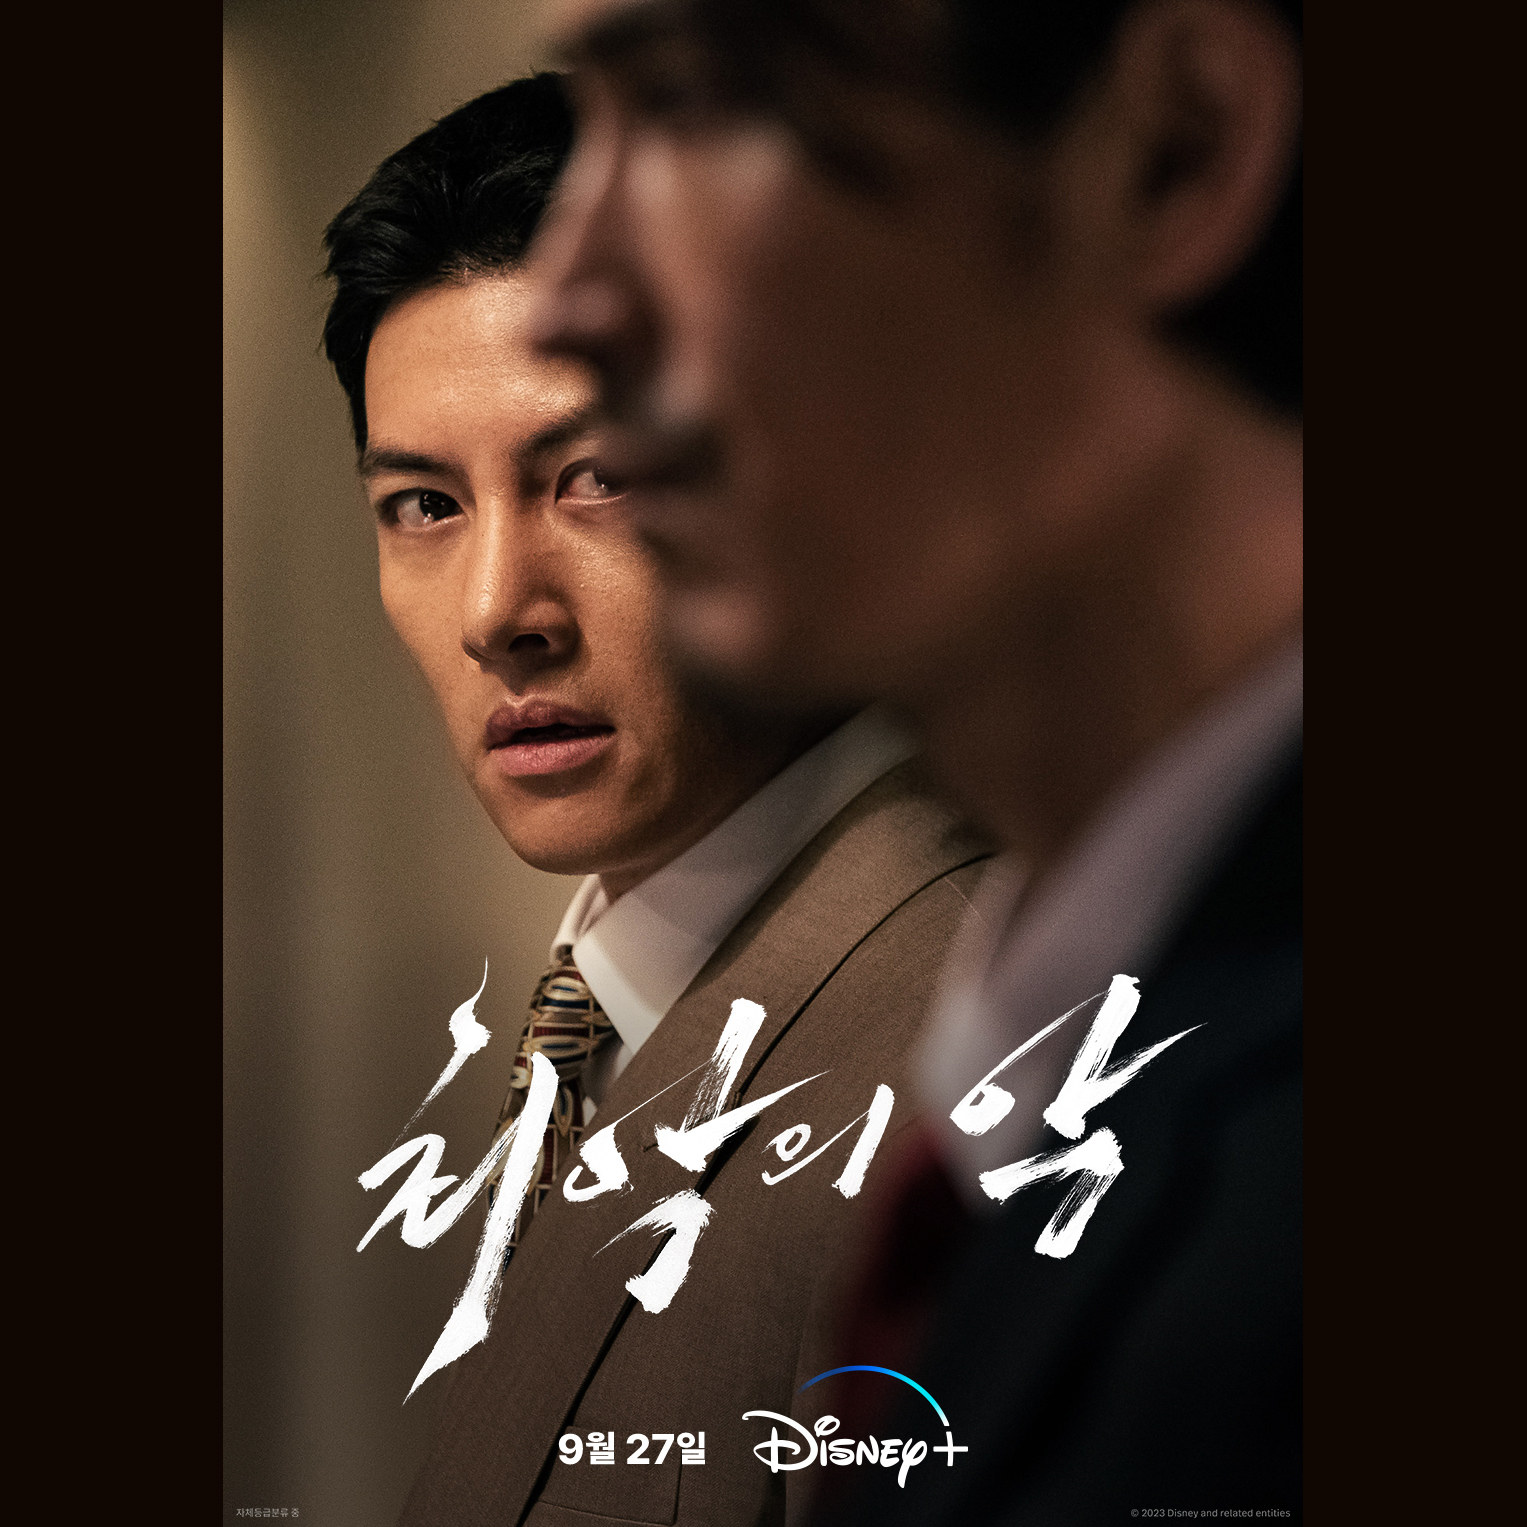 Ji Chang Wook 'nam thần phim hành động' sẽ ra mắt bộ phim mới vào tháng 9 năm nay - ảnh 5